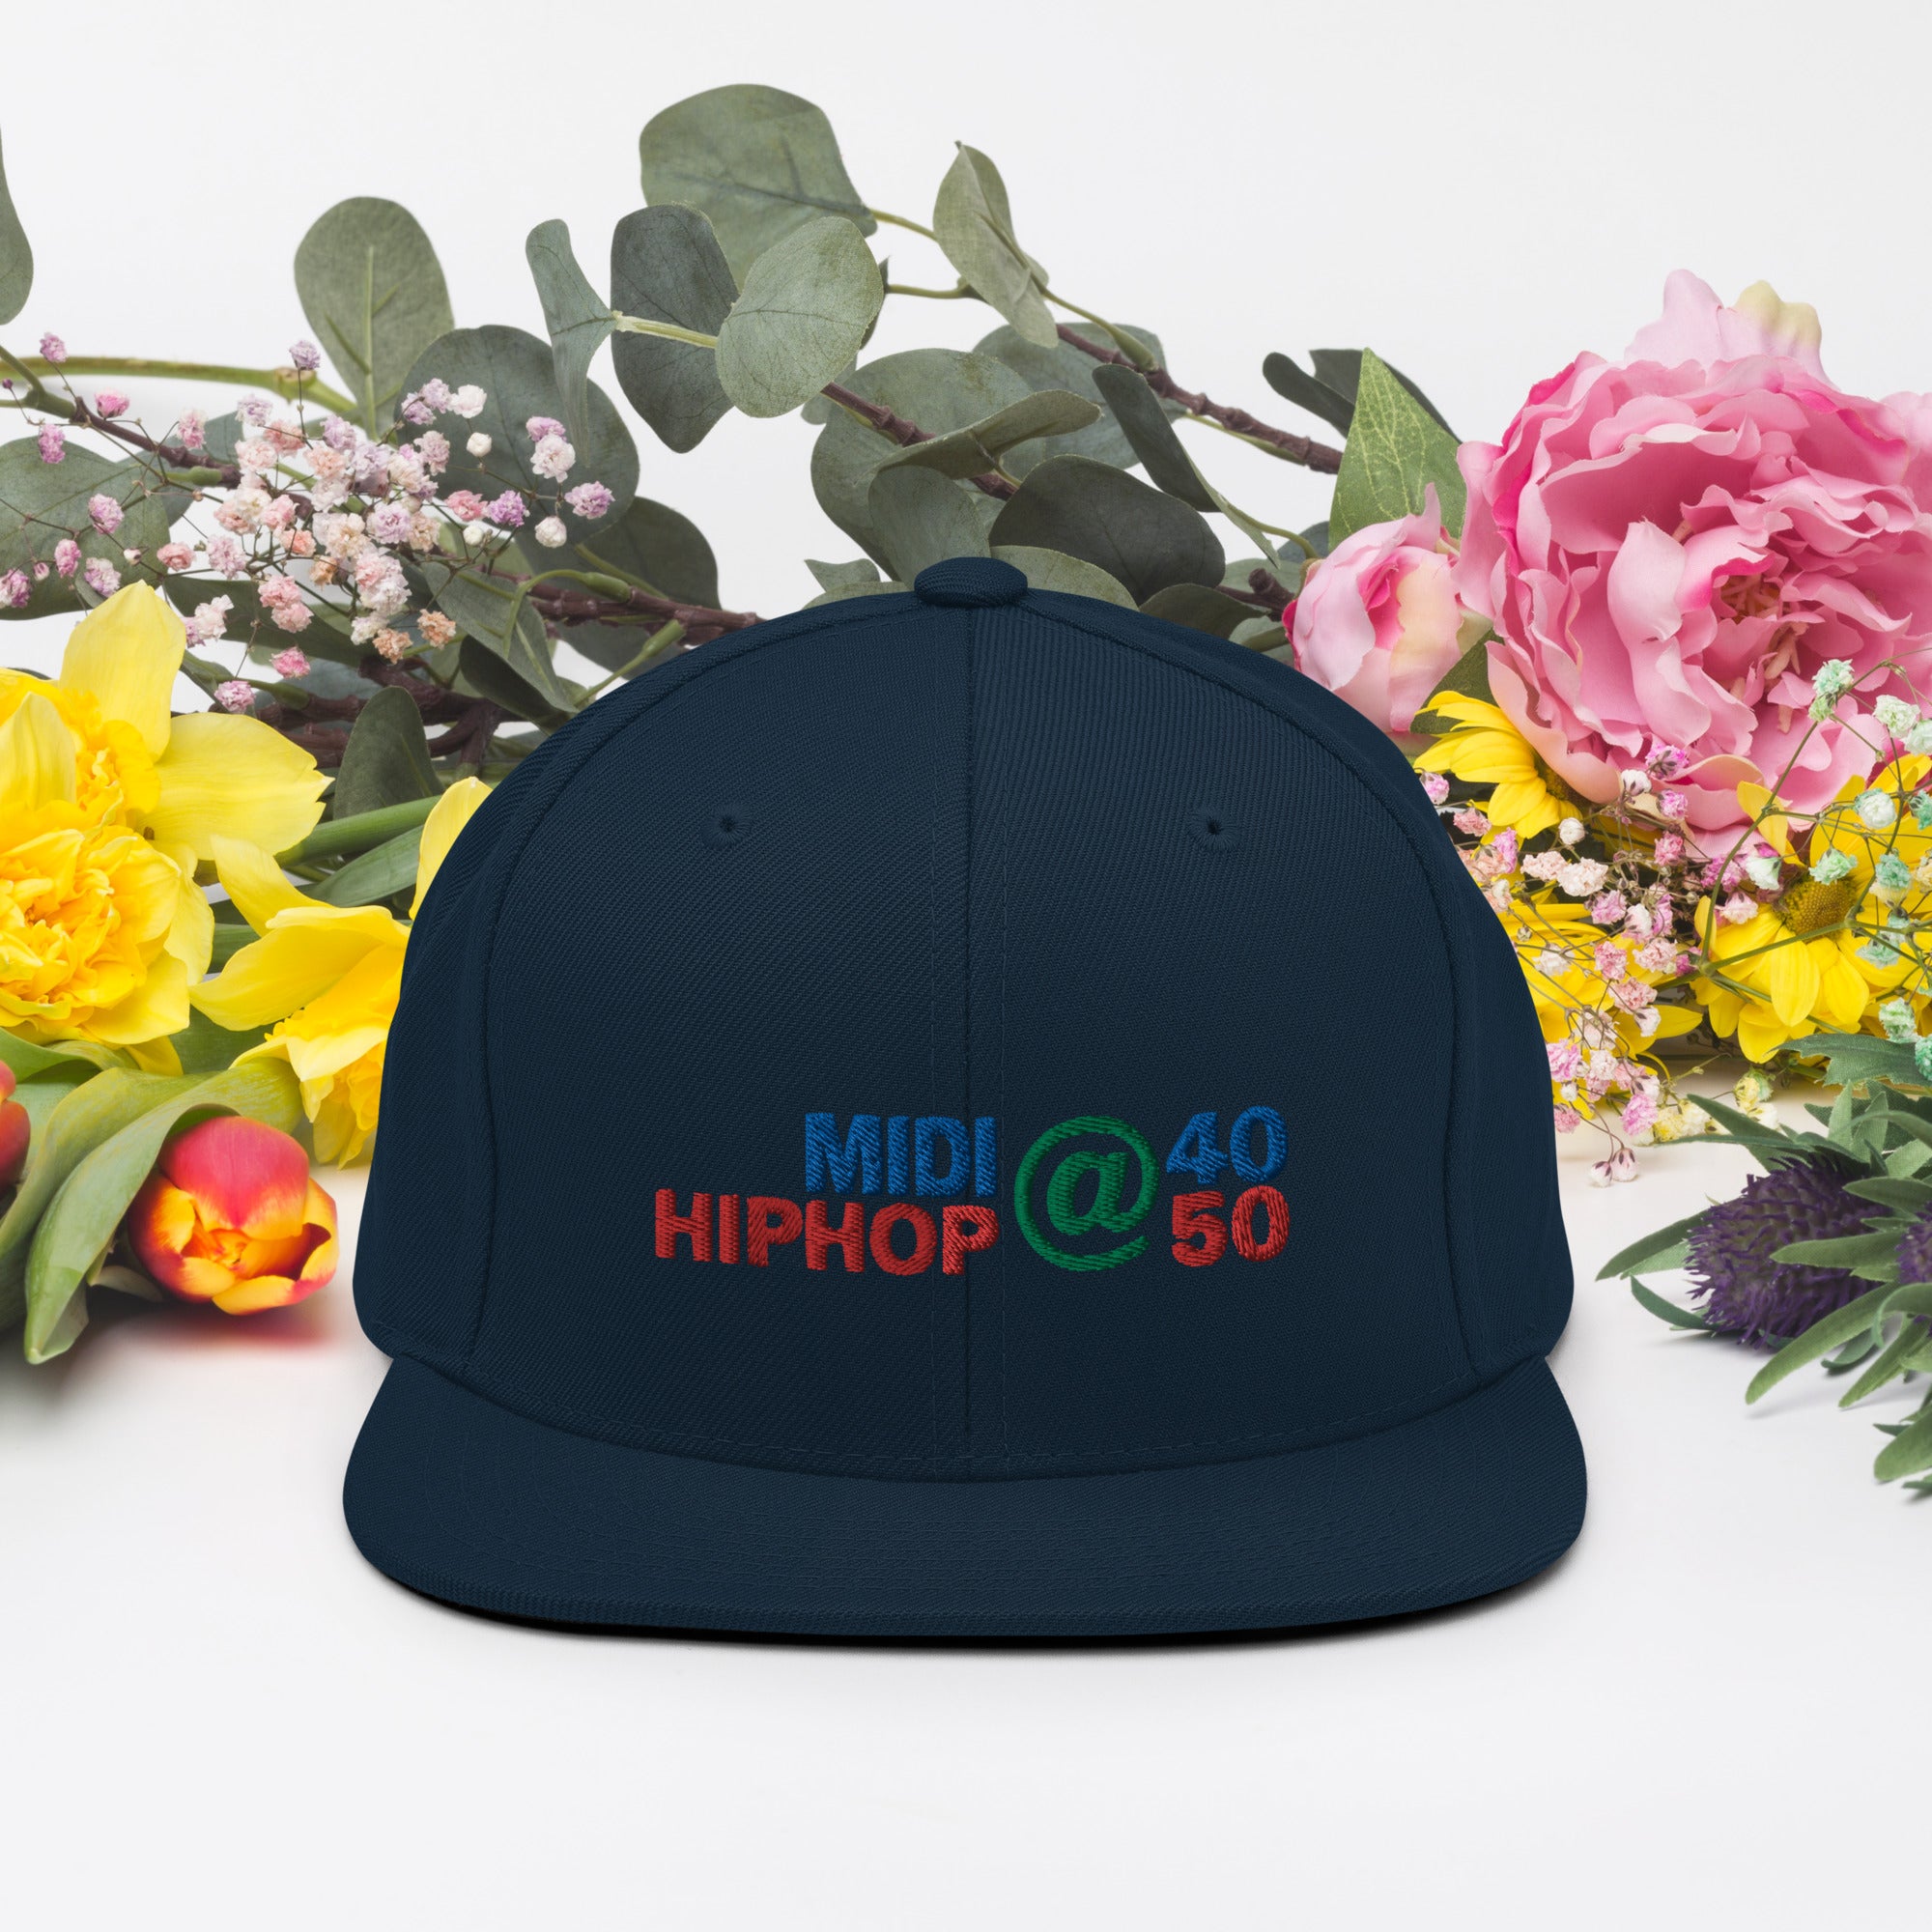 Supreme Hip Hop Cap